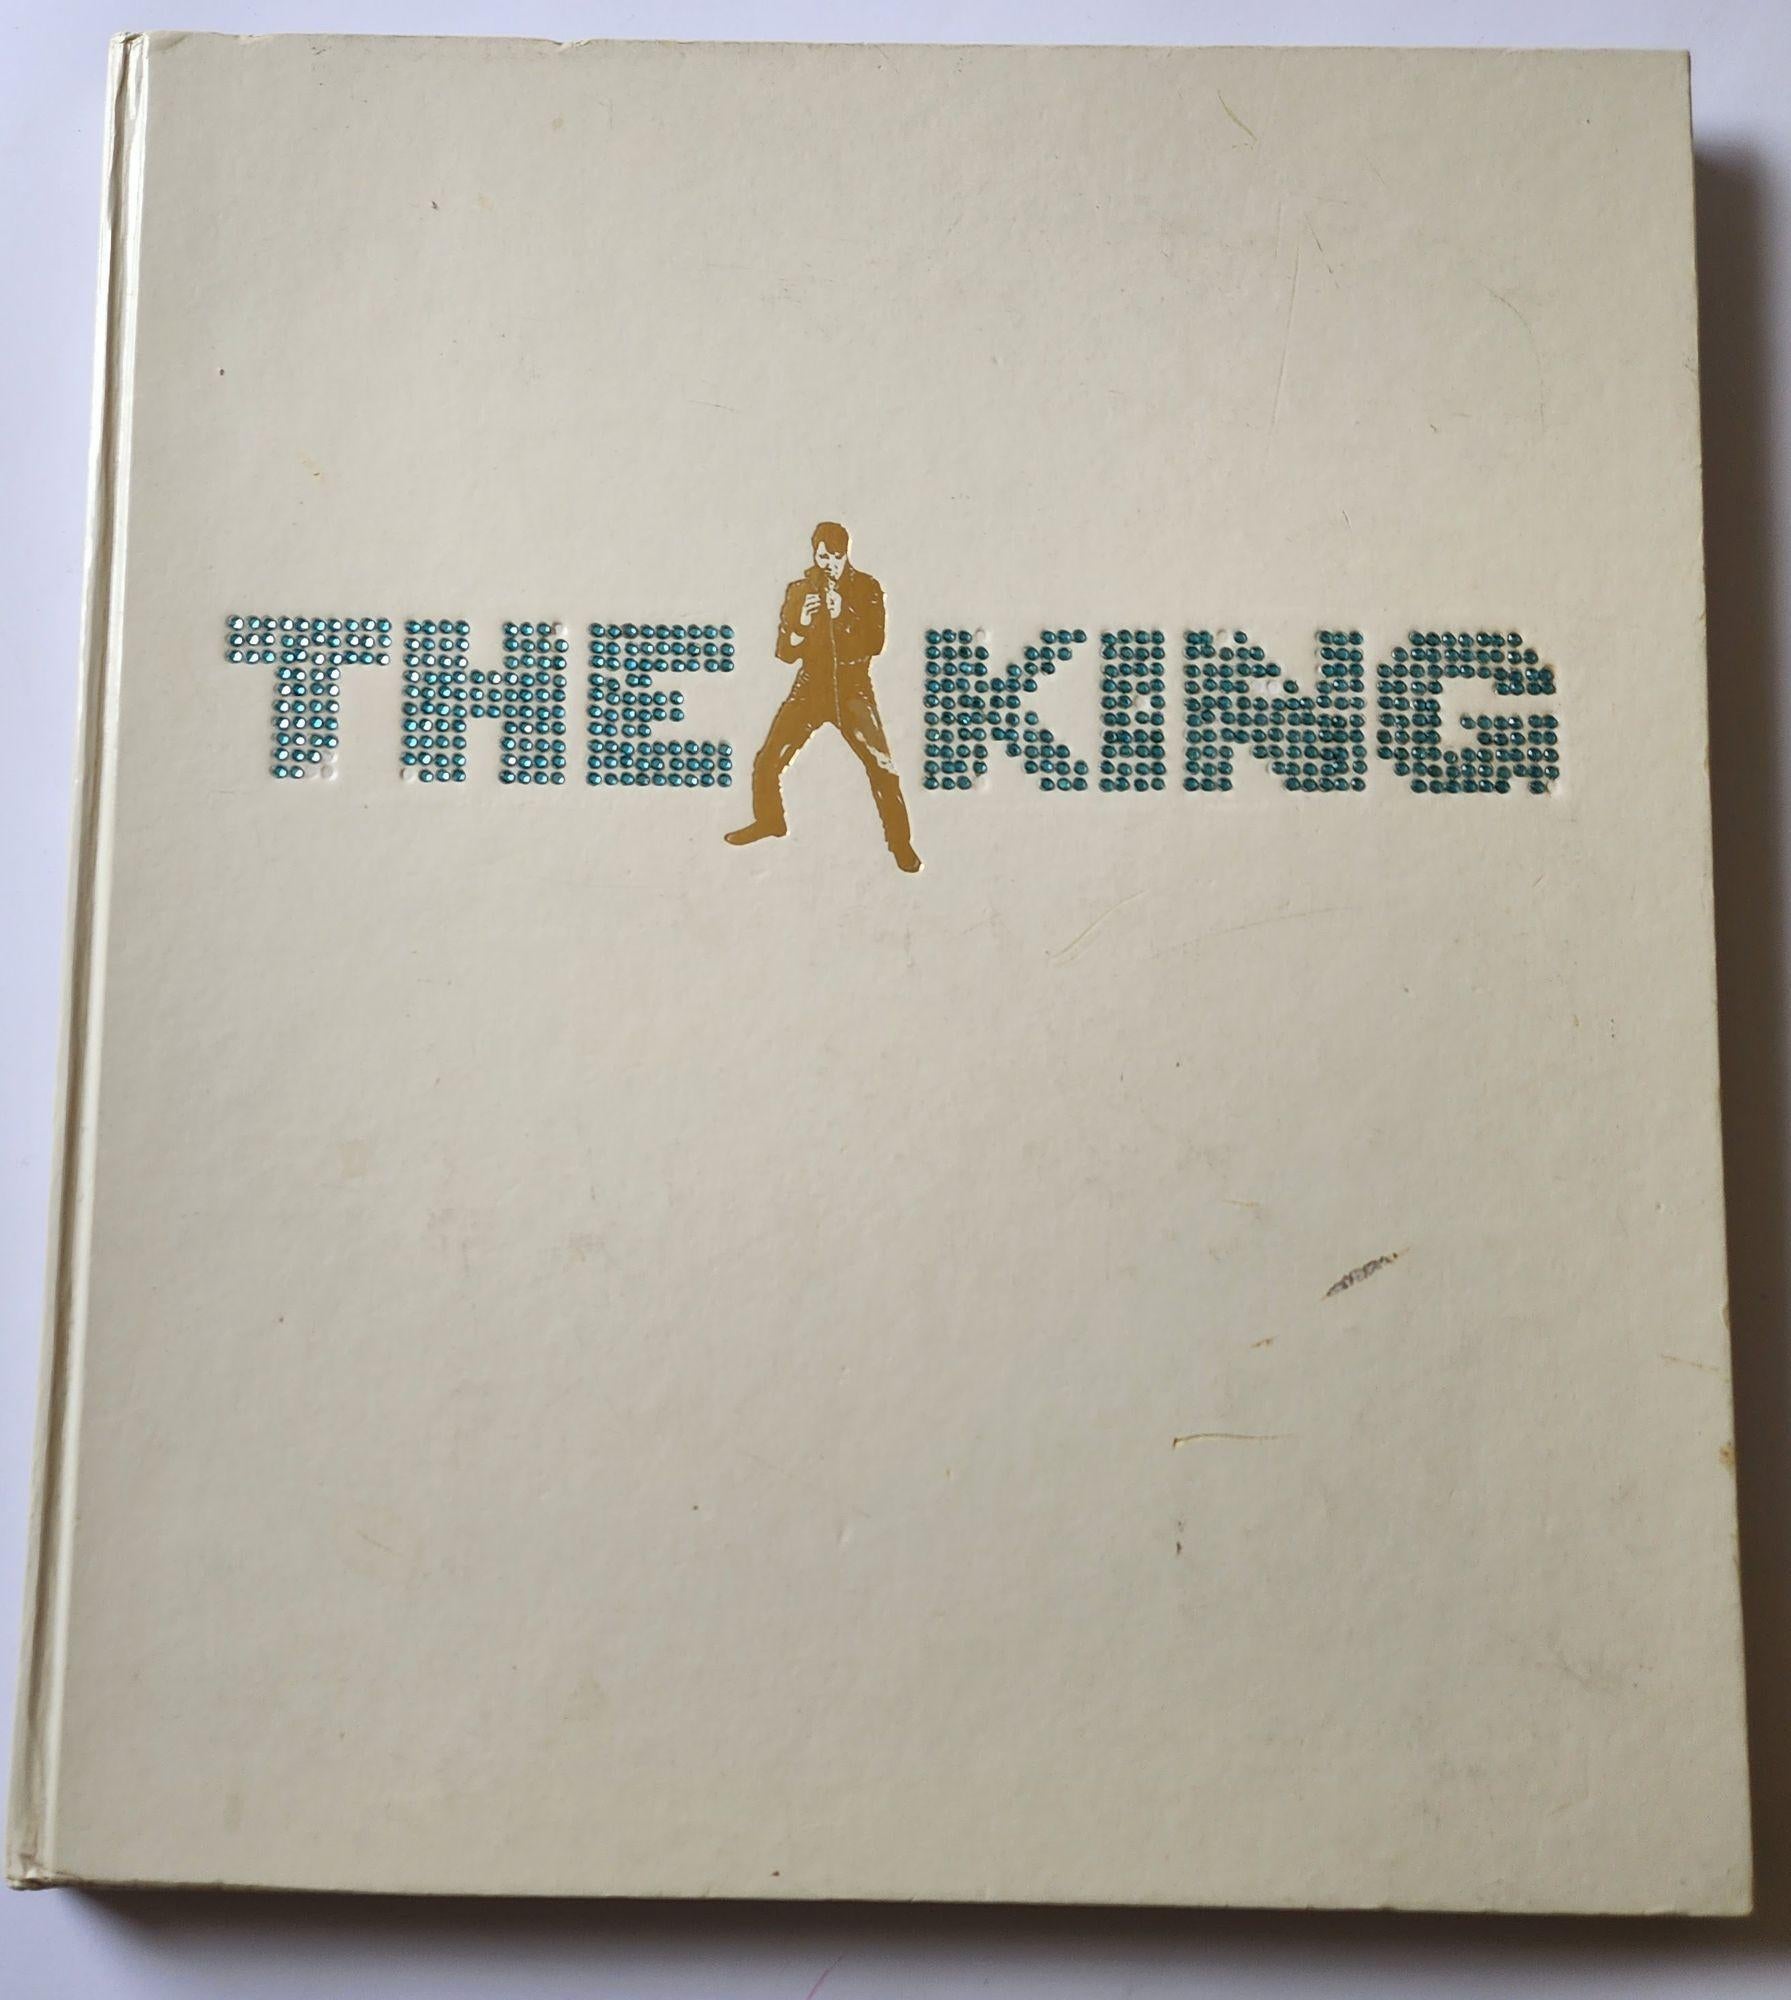 The King par Jim Piazza Elvis Presley - Livre de table de grande taille